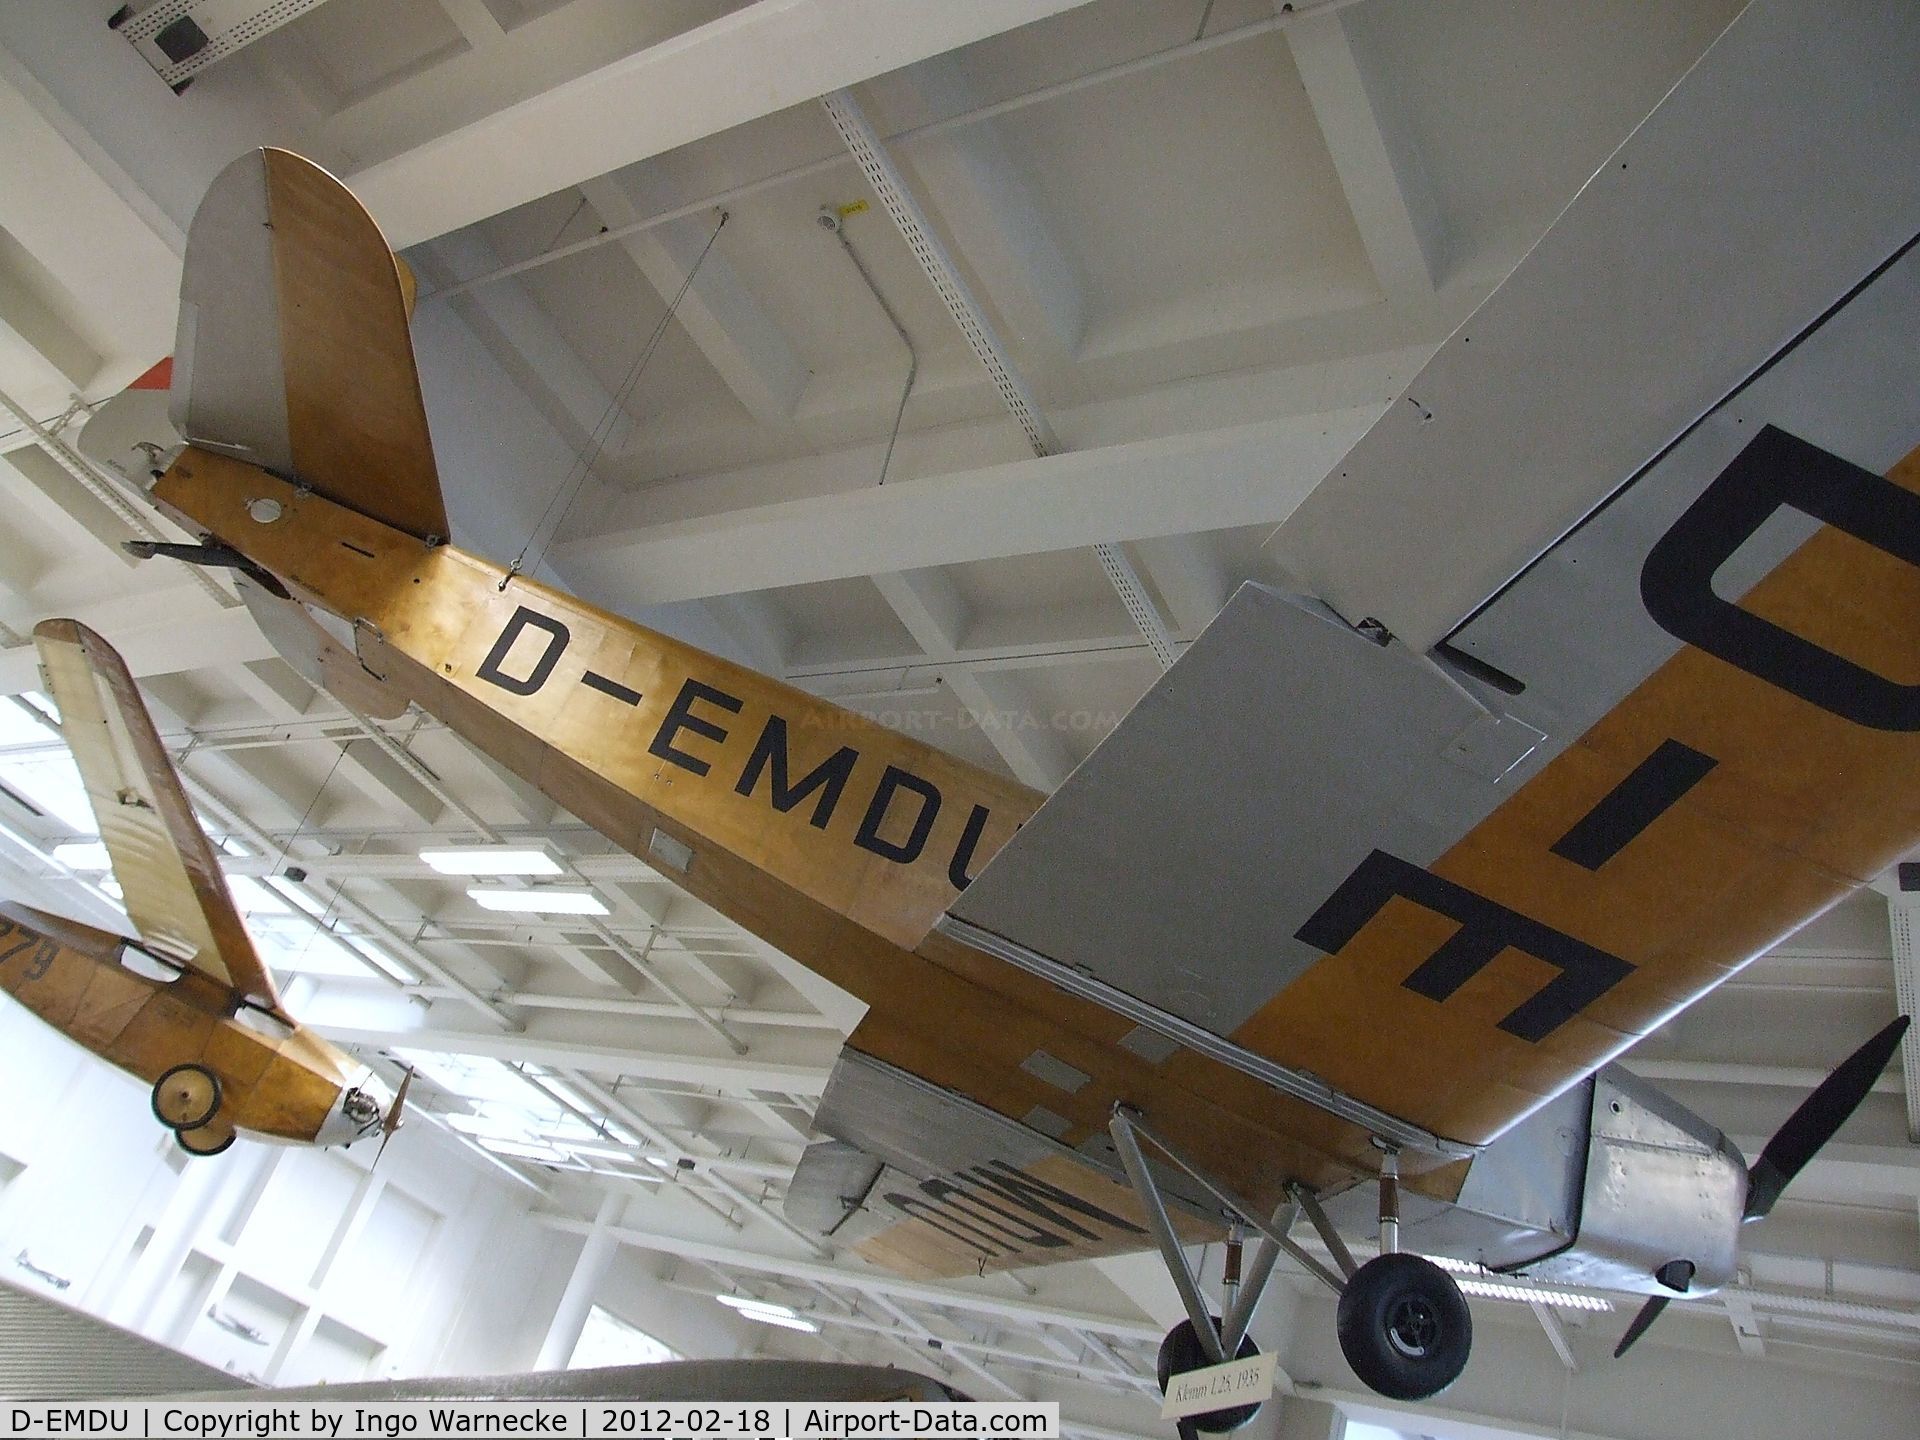 D-EMDU, 1935 Klemm L25e C/N 980, Klemm L 25 e at the Deutsches Museum, München (Munich)